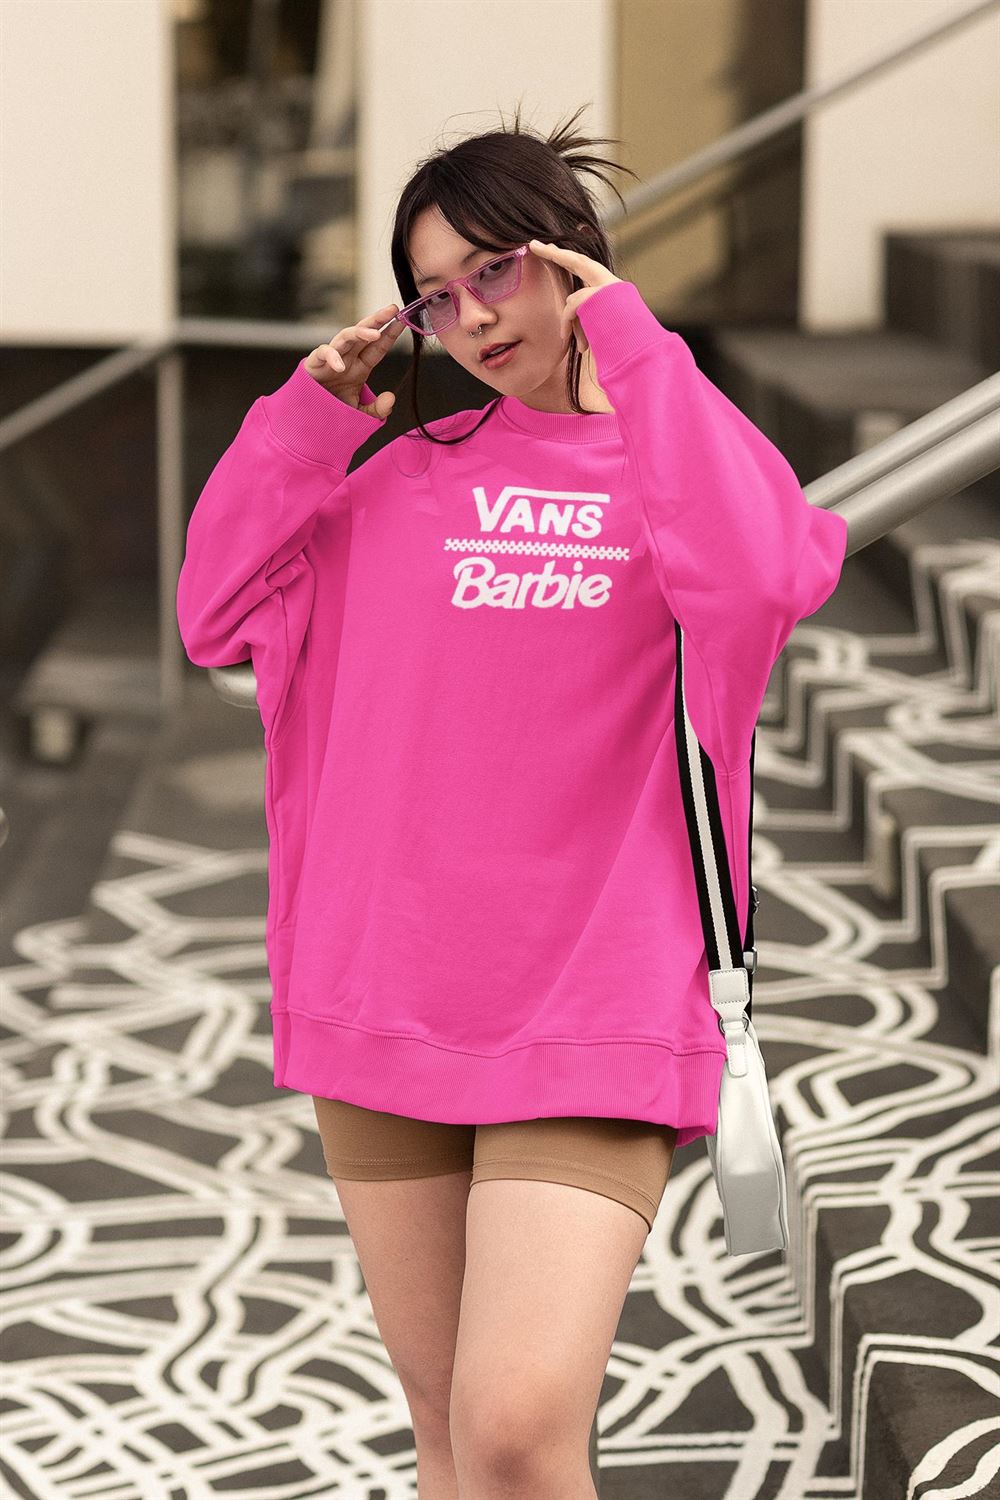 Vans Barbie Pink Sweatshirt Shibtee